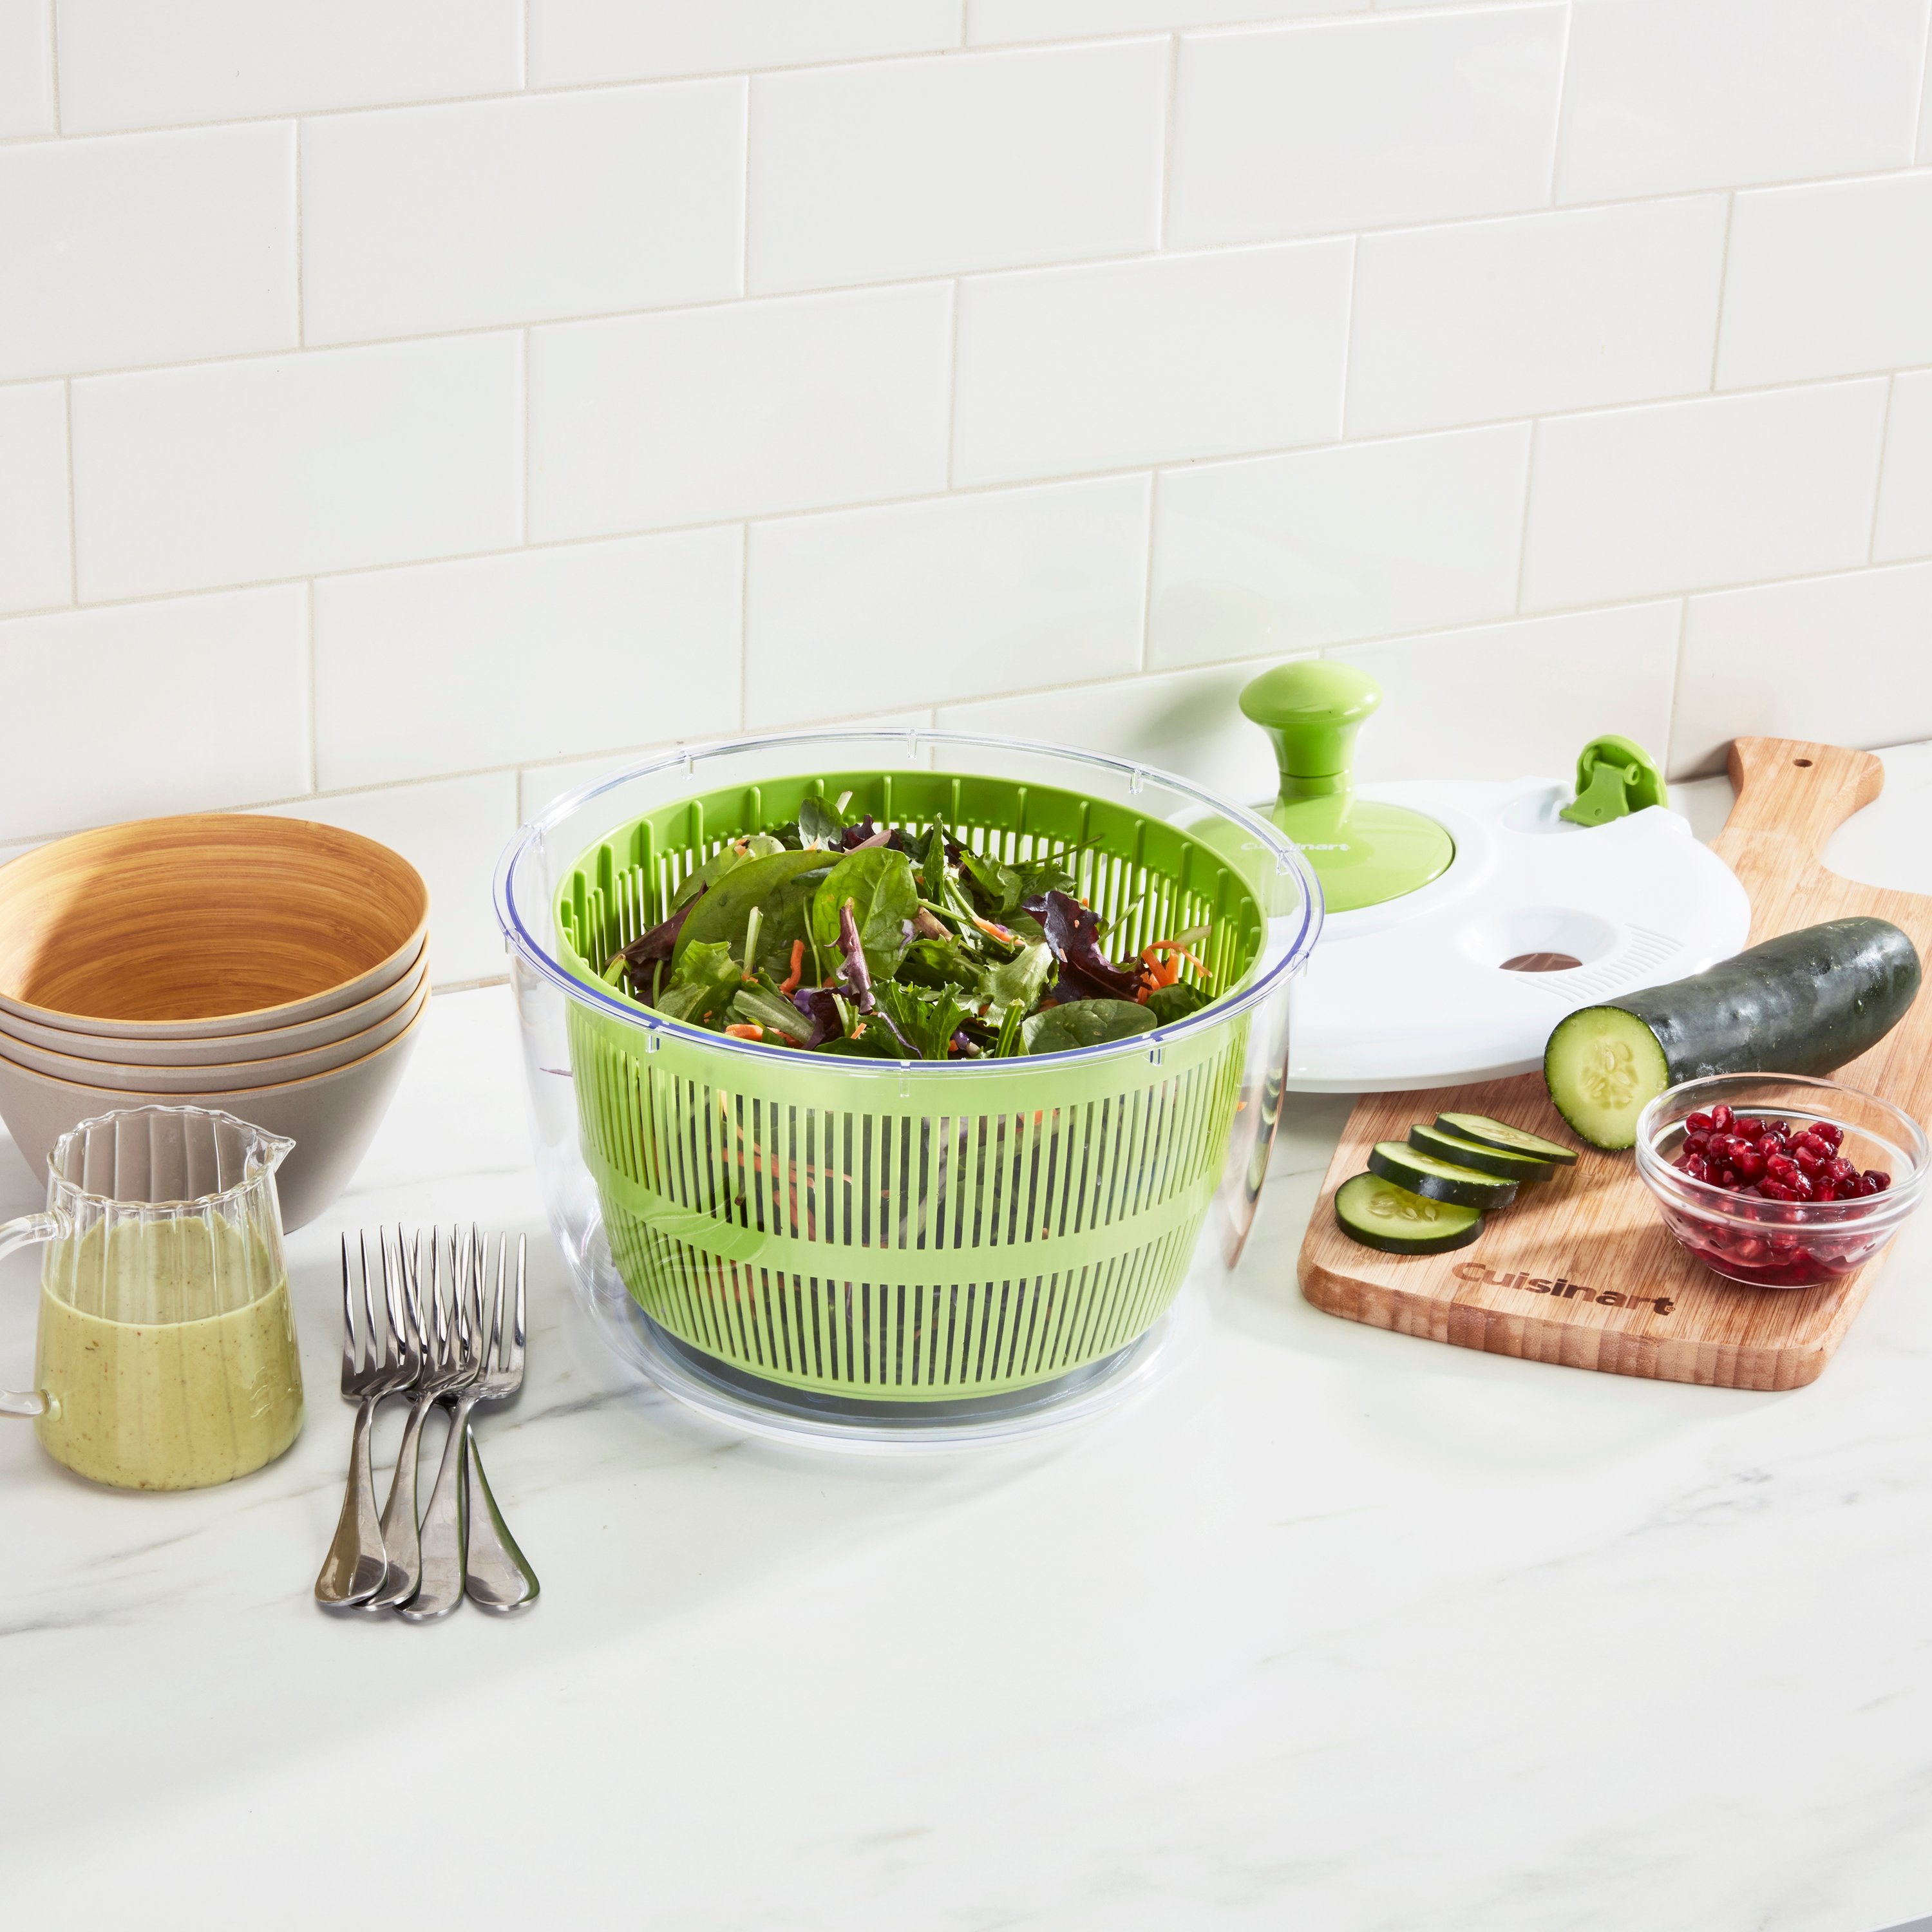 1 piece Complete Kitchen Tool Set: Vegetable Dryer, Salad Spinner, Fruit  Basket, and More!